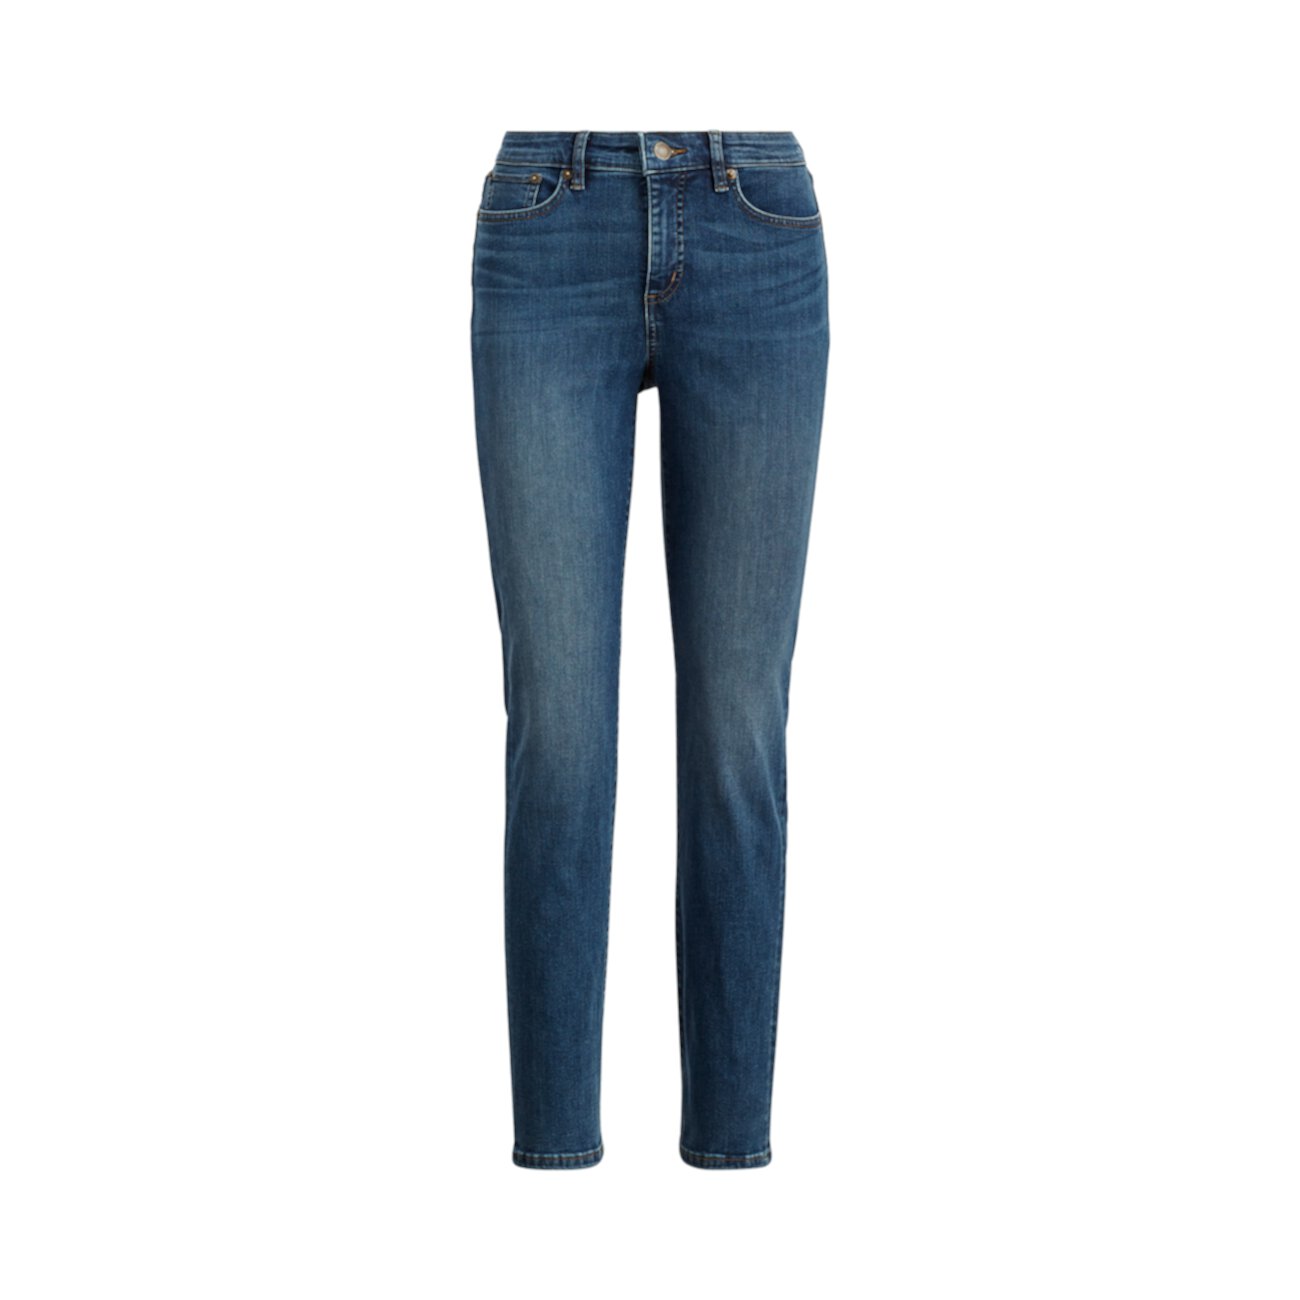 Прямые пышные джинсы со средней посадкой Ralph Lauren